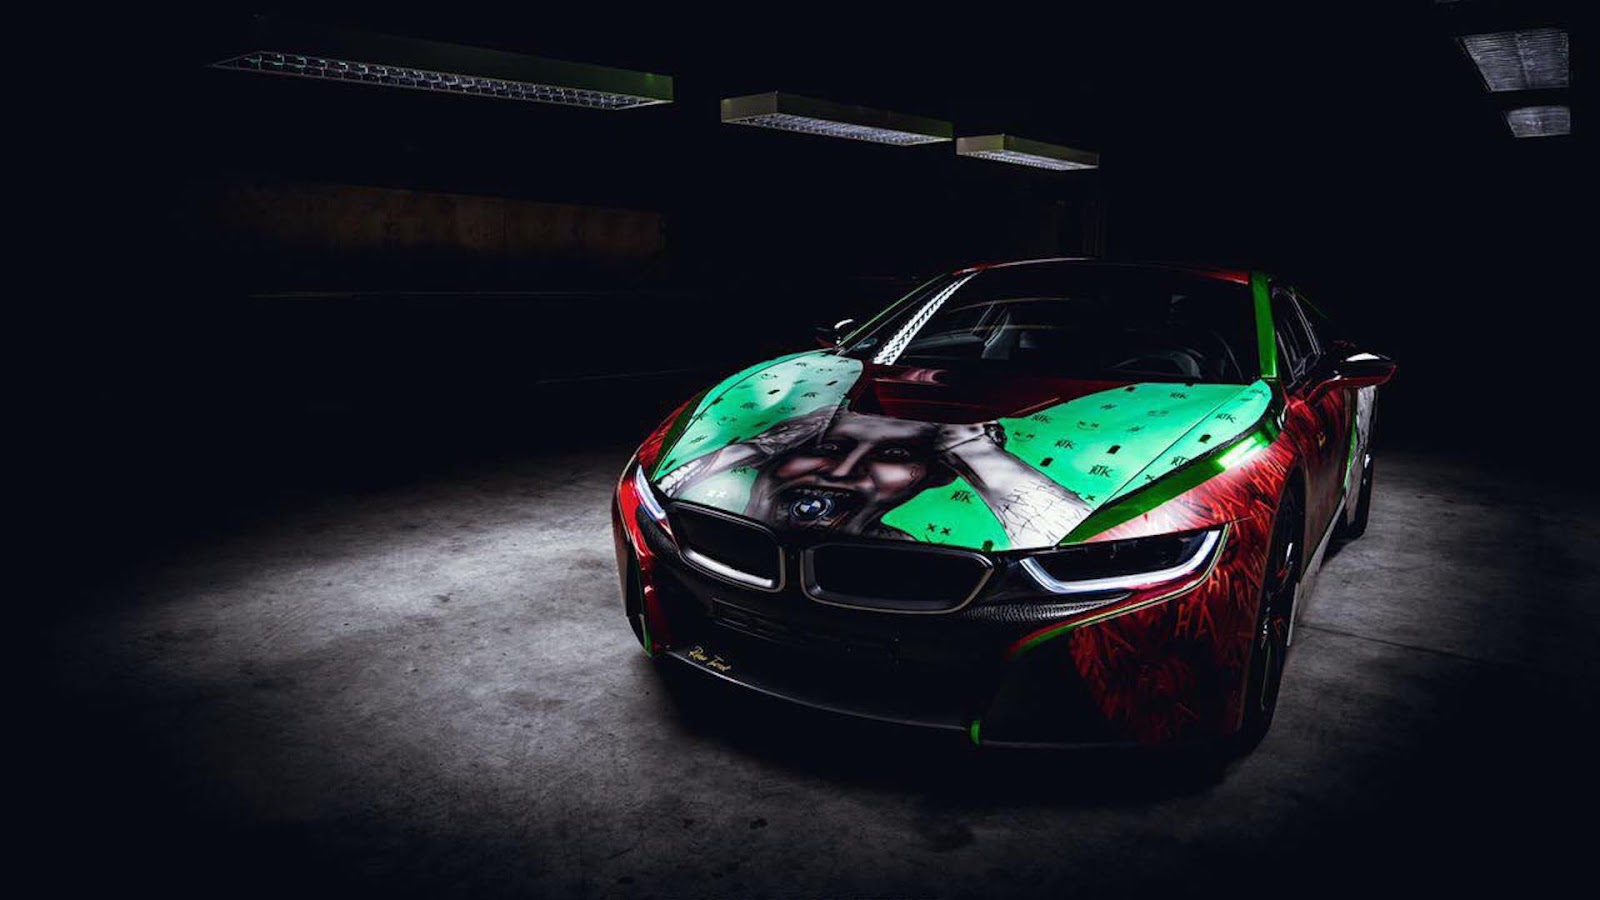 BMW i8 phong cách Joker “Biệt đội cảm tử”